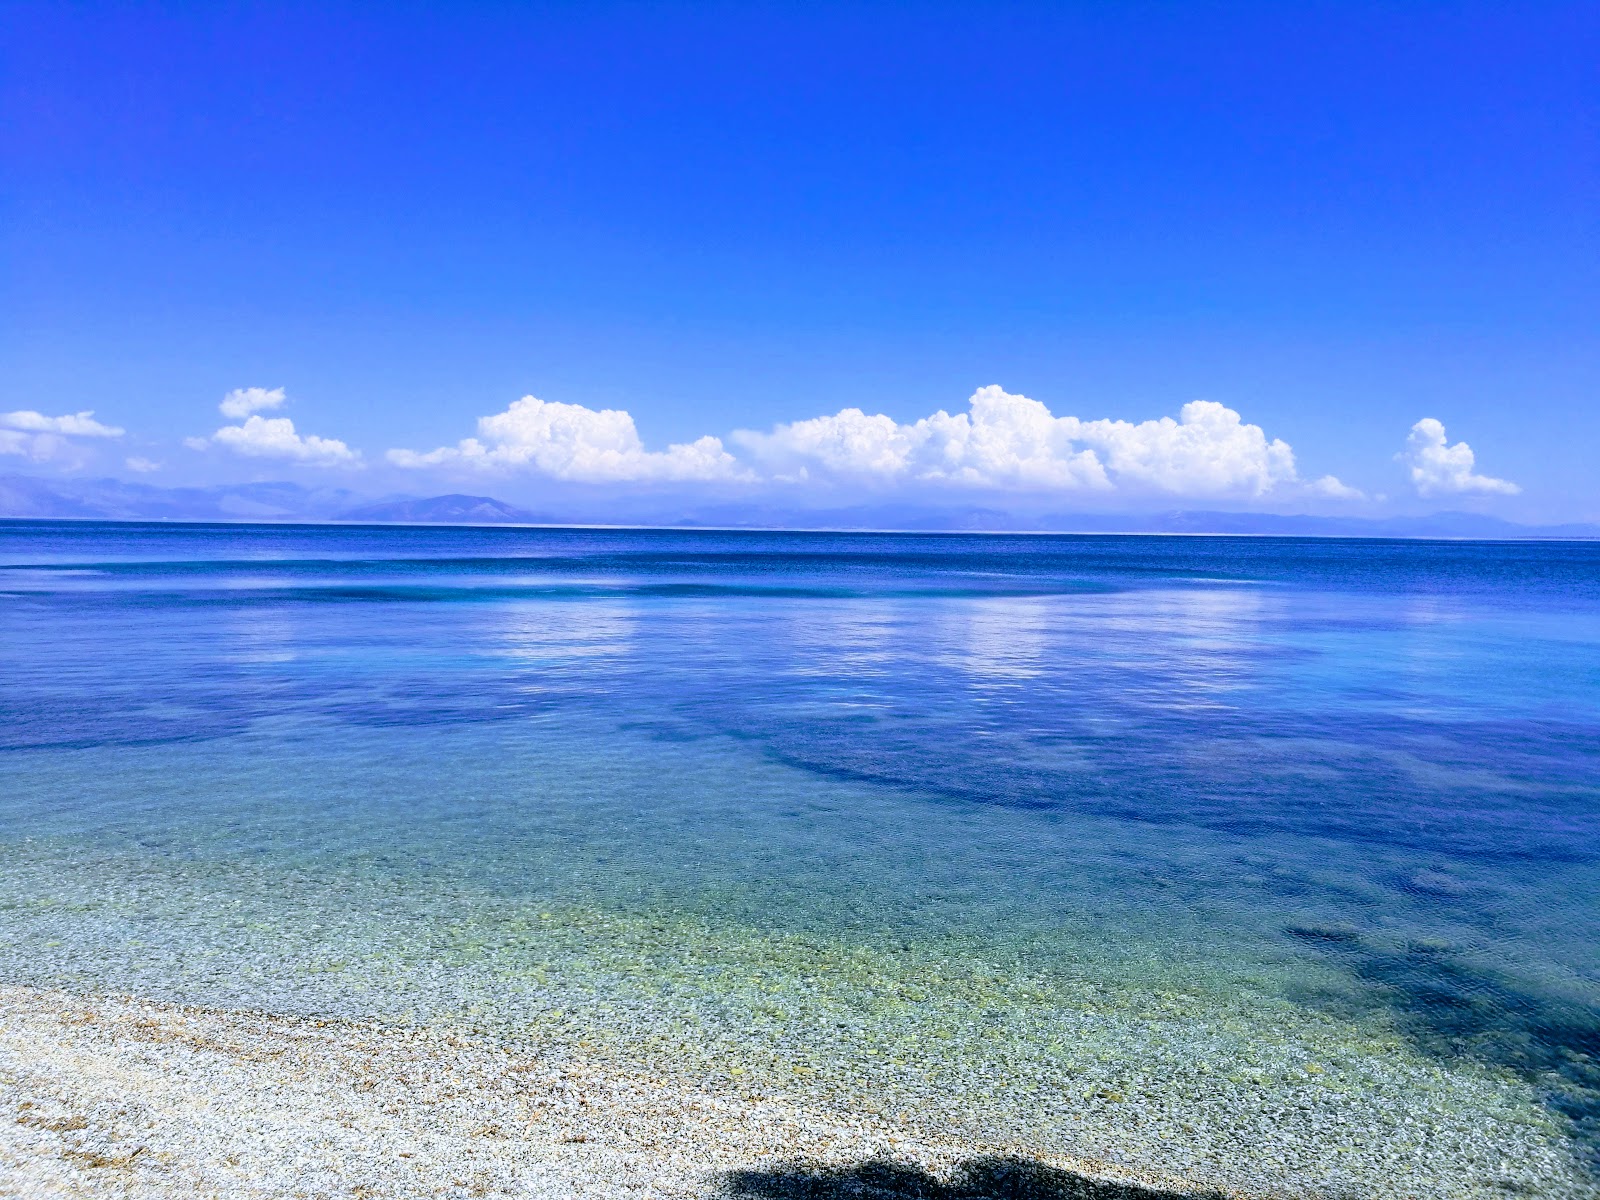 科孚岛感官海滩的照片 带有碧绿色纯水表面